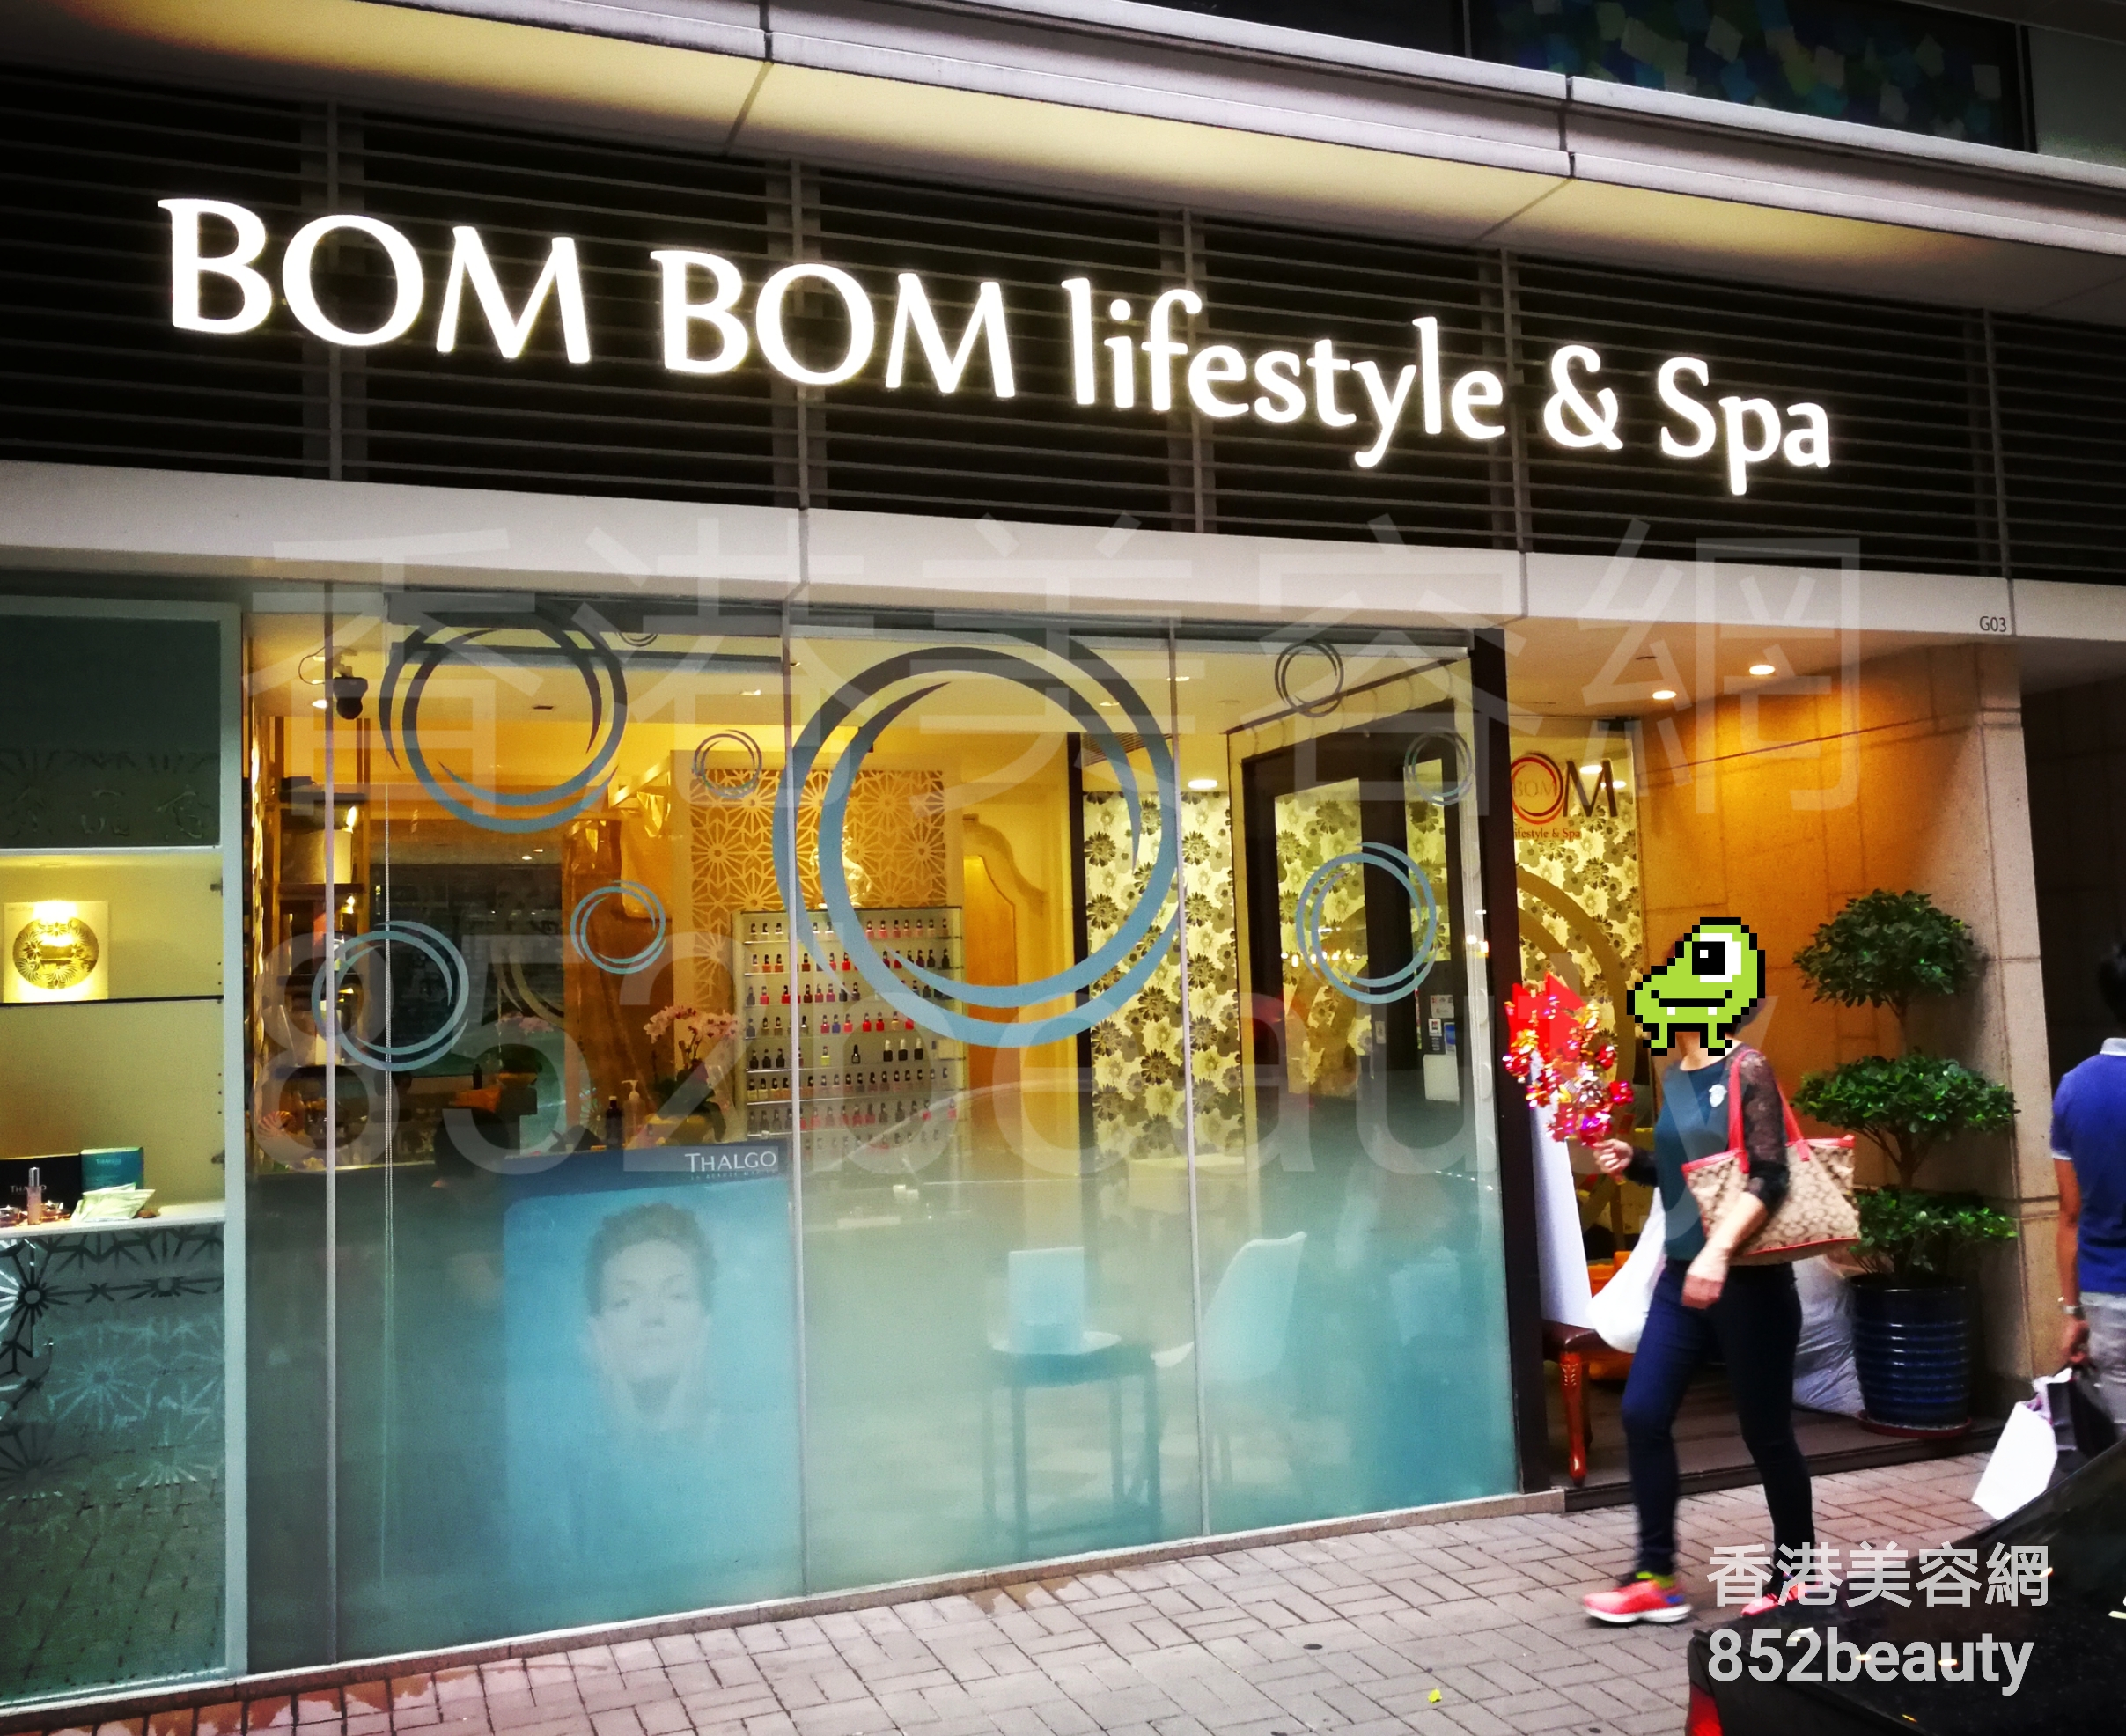 美容院 / 美容師: BOM BOM lifestyle & Spa